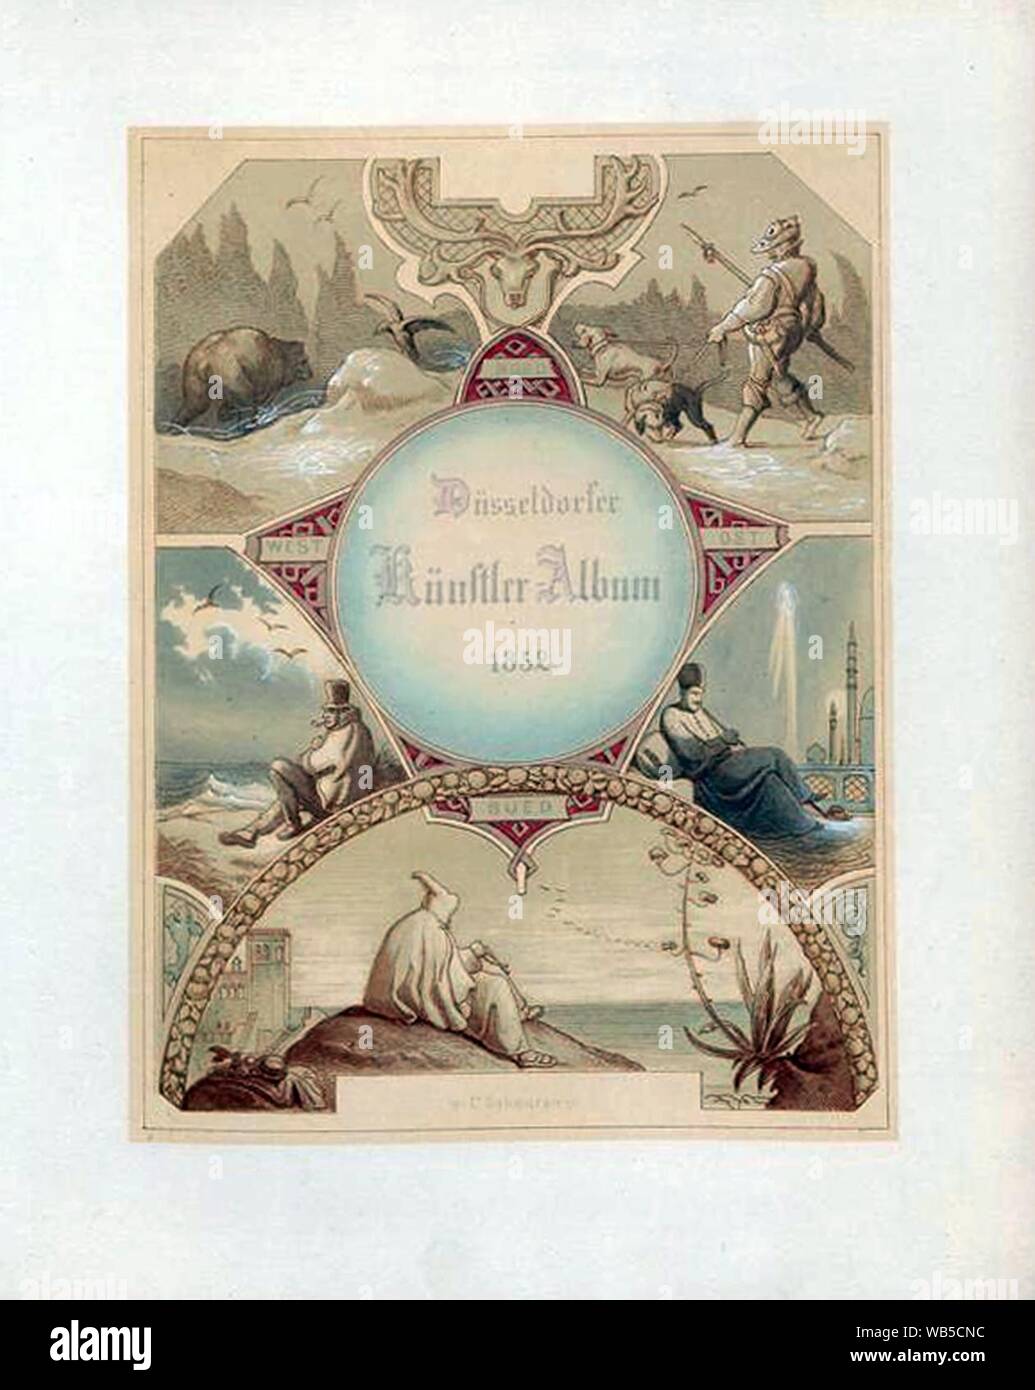 Düsseldorfer Künstler-Album 1852, Titelblatt illustriert von Caspar Scheuren. Foto Stock